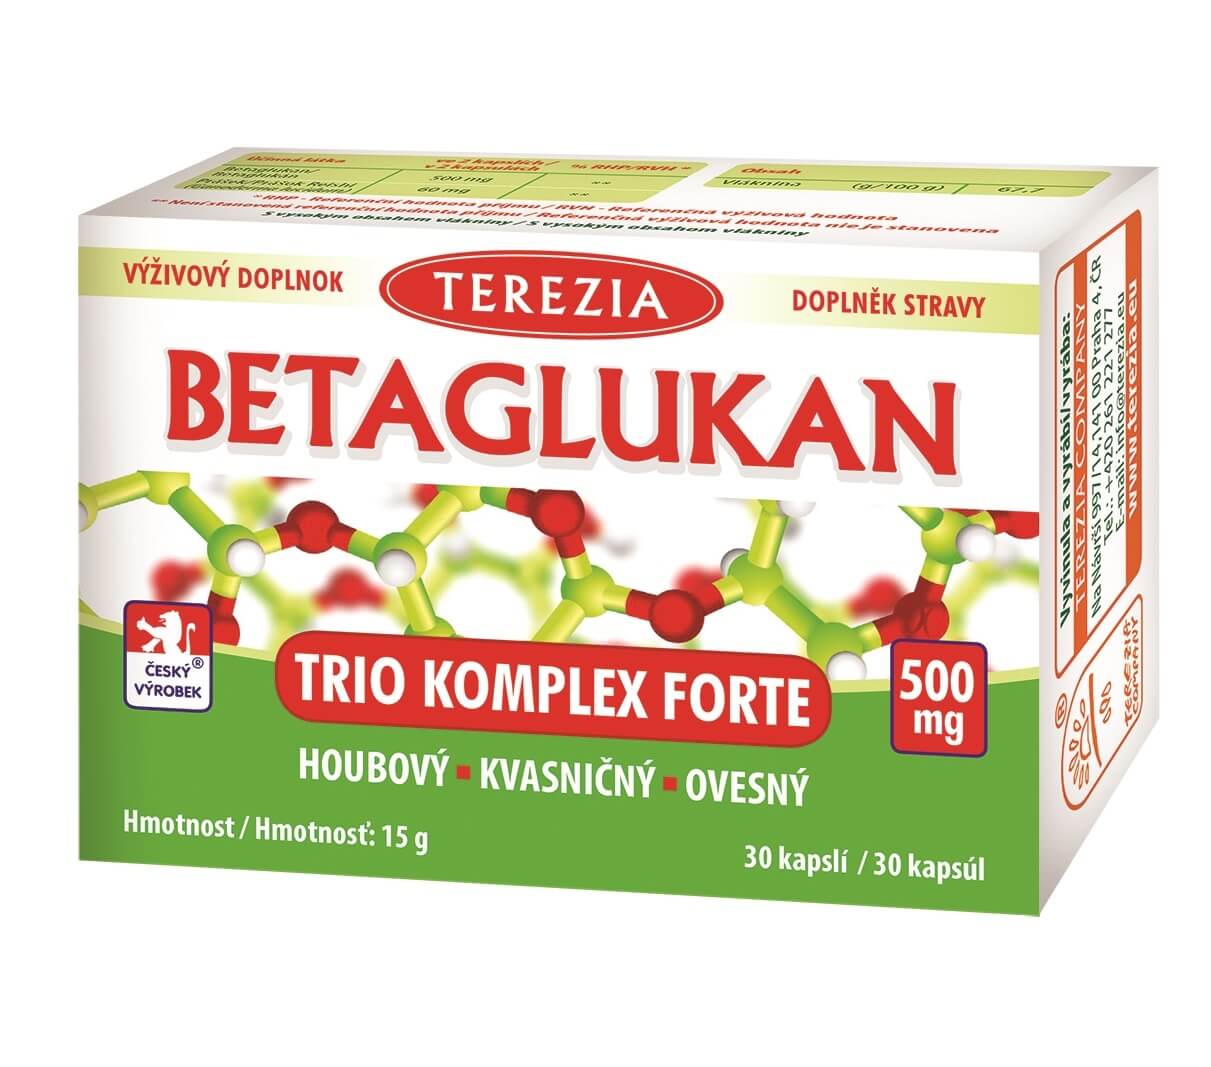 Zobrazit detail výrobku Terezia Company Betaglukan Trio Komplex Forte 500 mg 30 kapslí + 2 měsíce na vrácení zboží